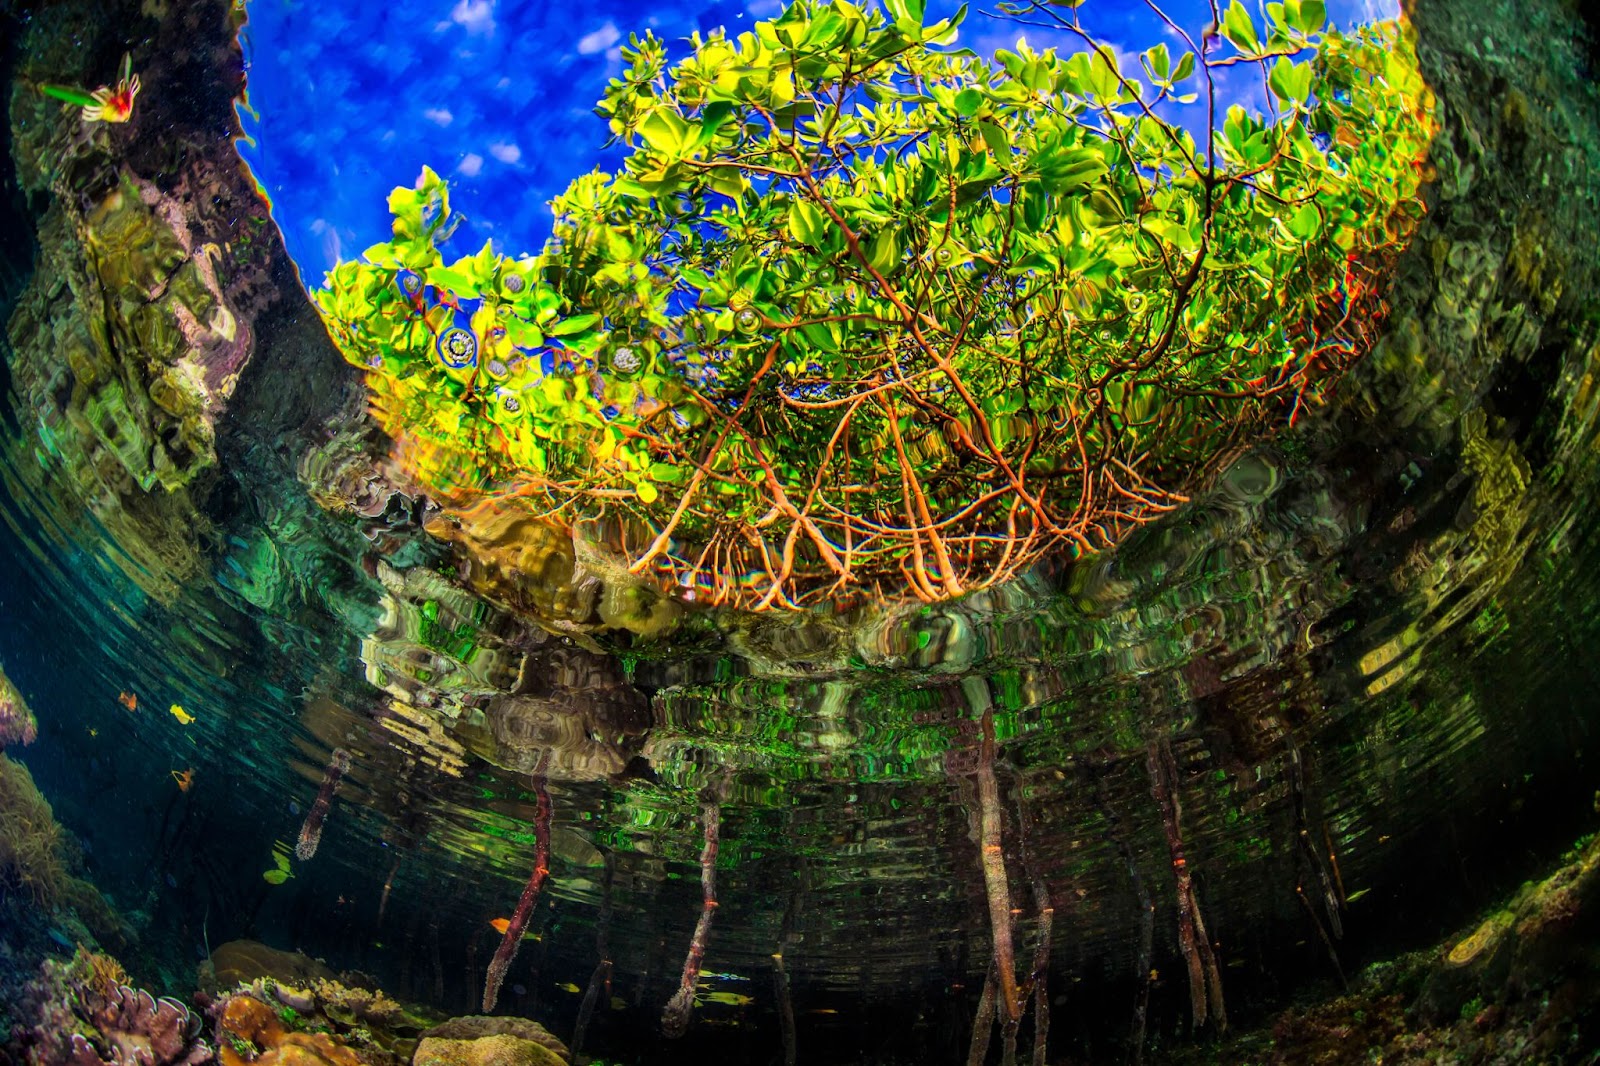 Ein Blick auf Mangroven unter Wasser. Braune Wurzeln führen zu leuchtendgrünen Blättern, die sich als Silhouette vor einem strahlend blauen Himmelabheben und in einem welligen grünen Wasser verwurzeltsind.